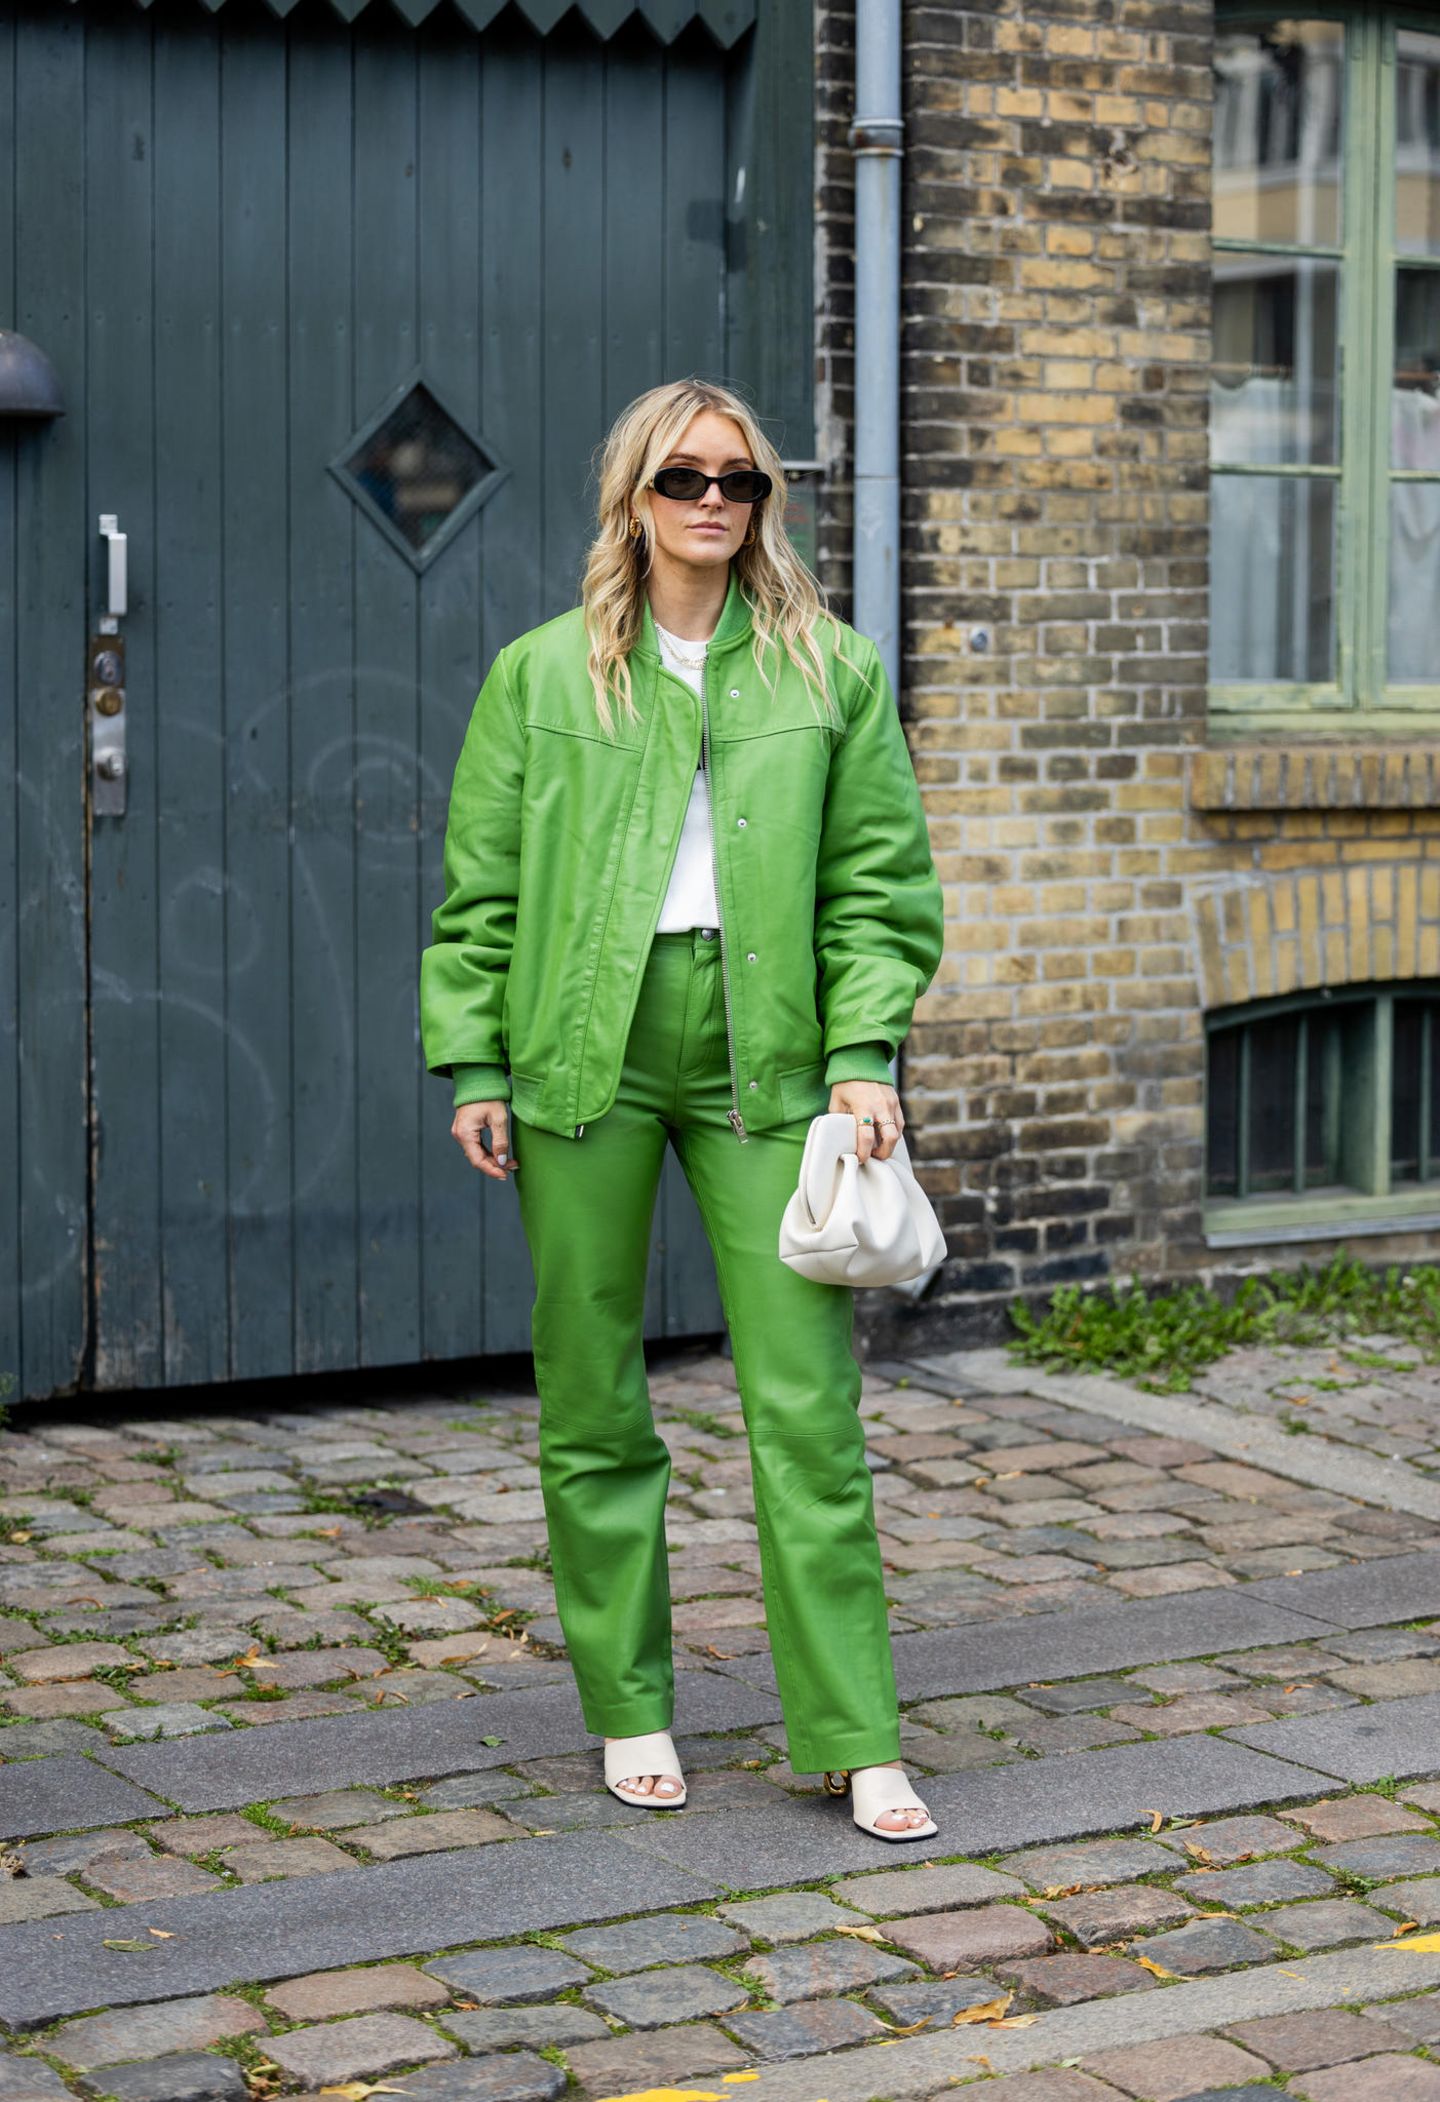 Das sommerliche Wetter lässt bei der Fashion Week in Kopenhagen etwas zu wünschen übrig. Influencerin Polly Sayer bringt mit ihrem grünen All-Over-Look dennoch Farbe in den grauen Tag.